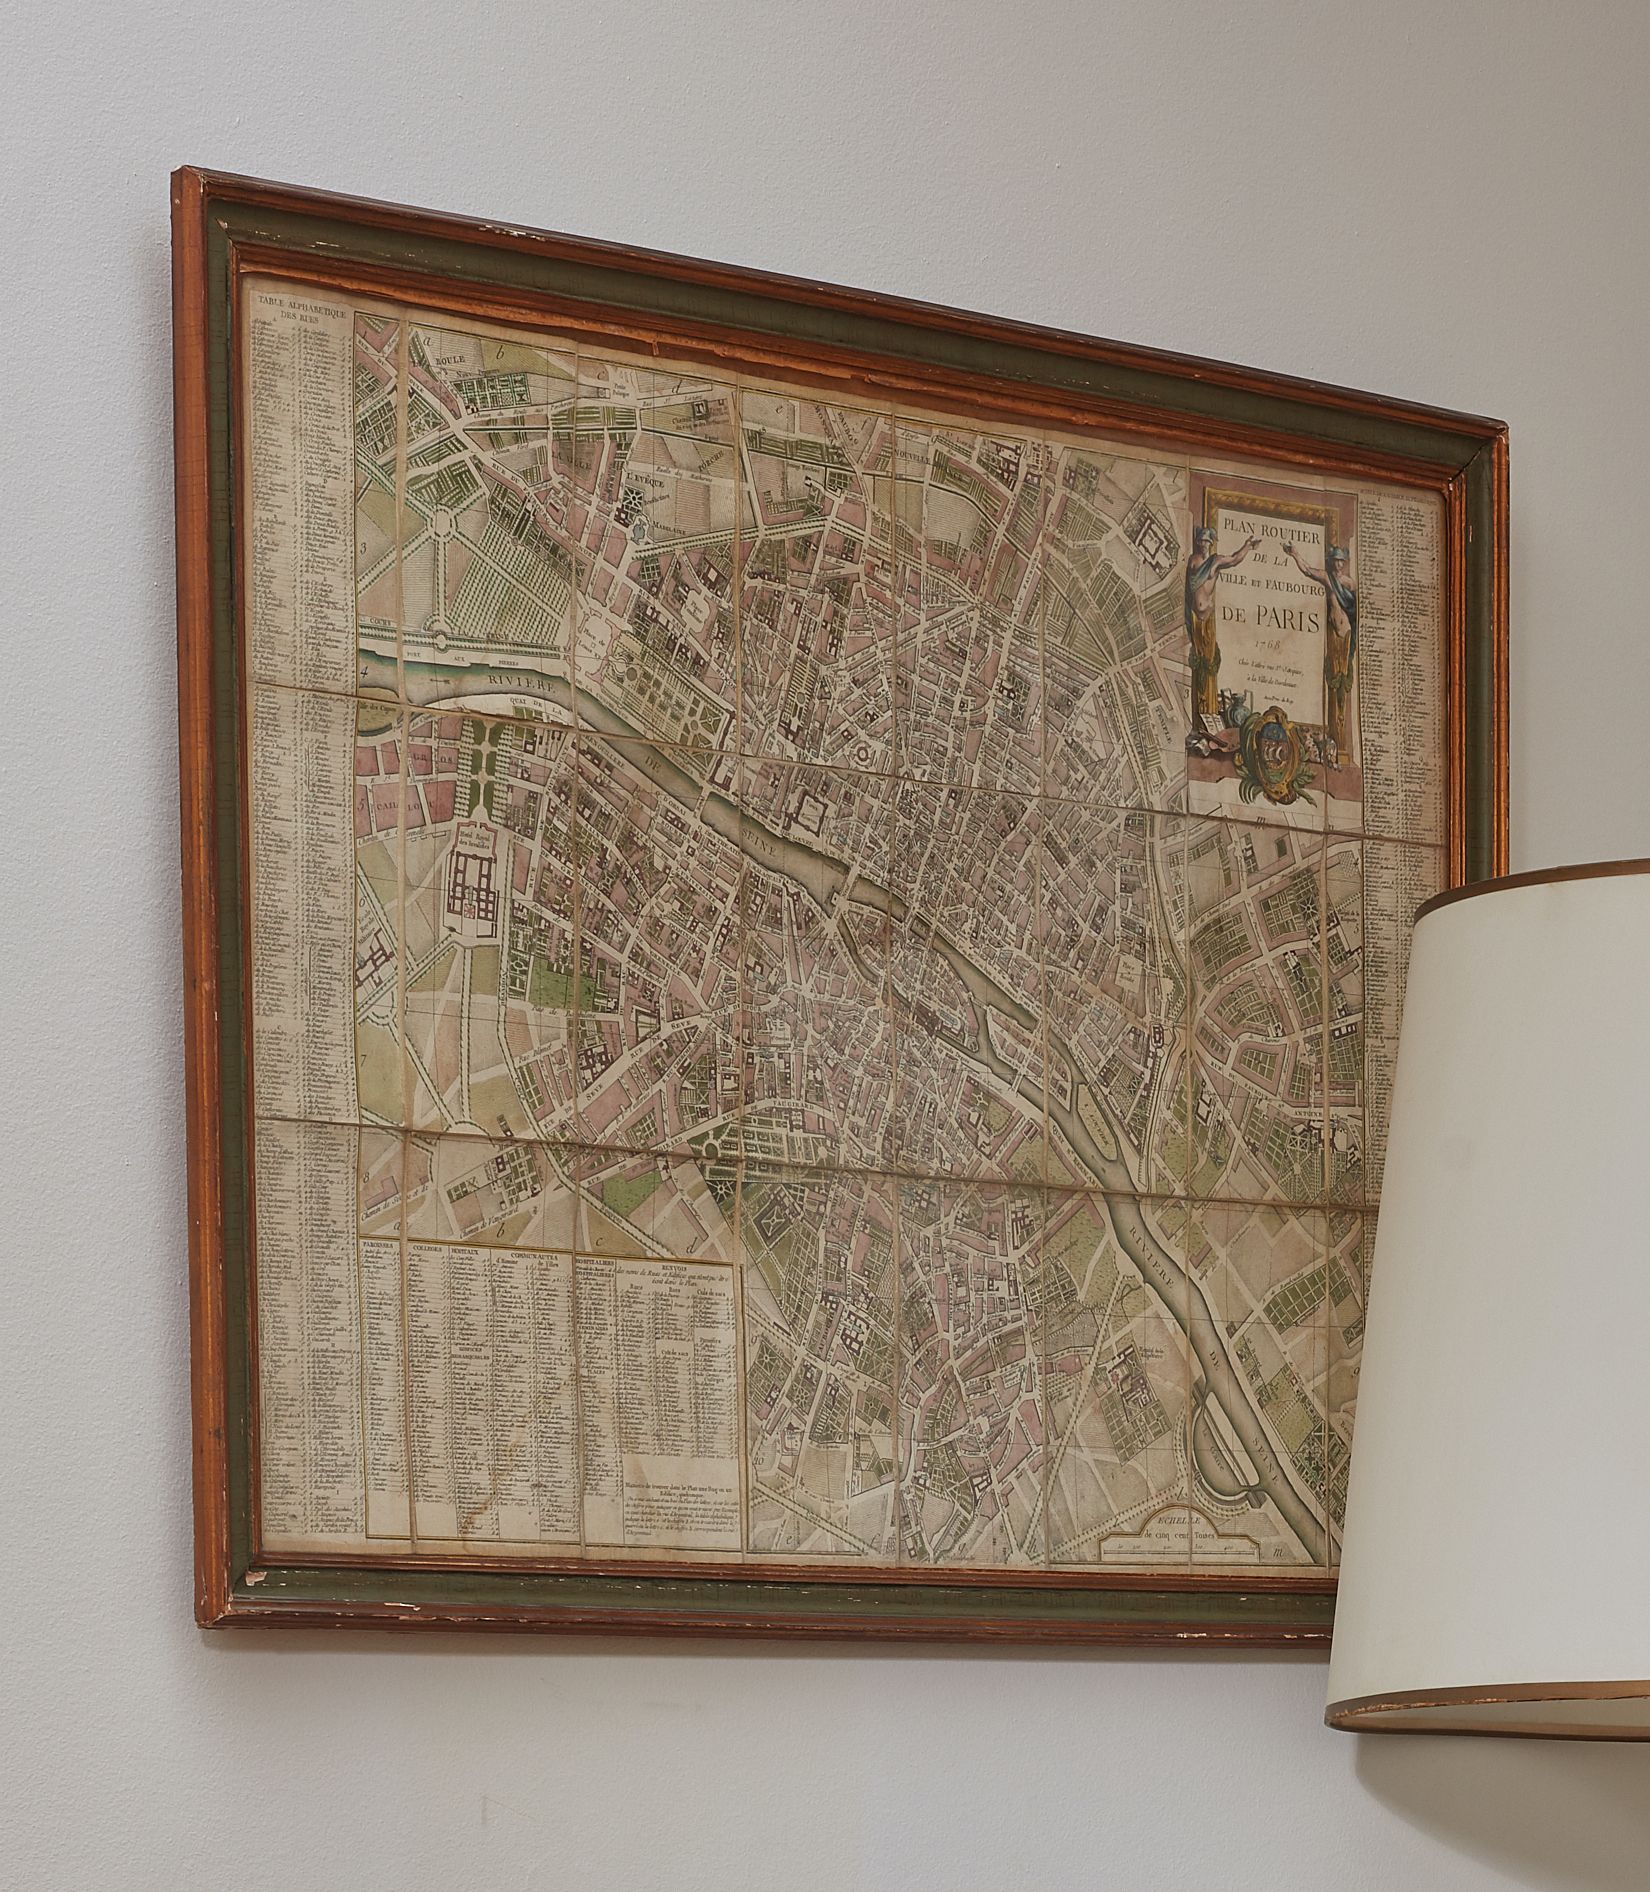 Null Carta stradale della città e dei sobborghi di Parigi 1768
55 x 77 cm